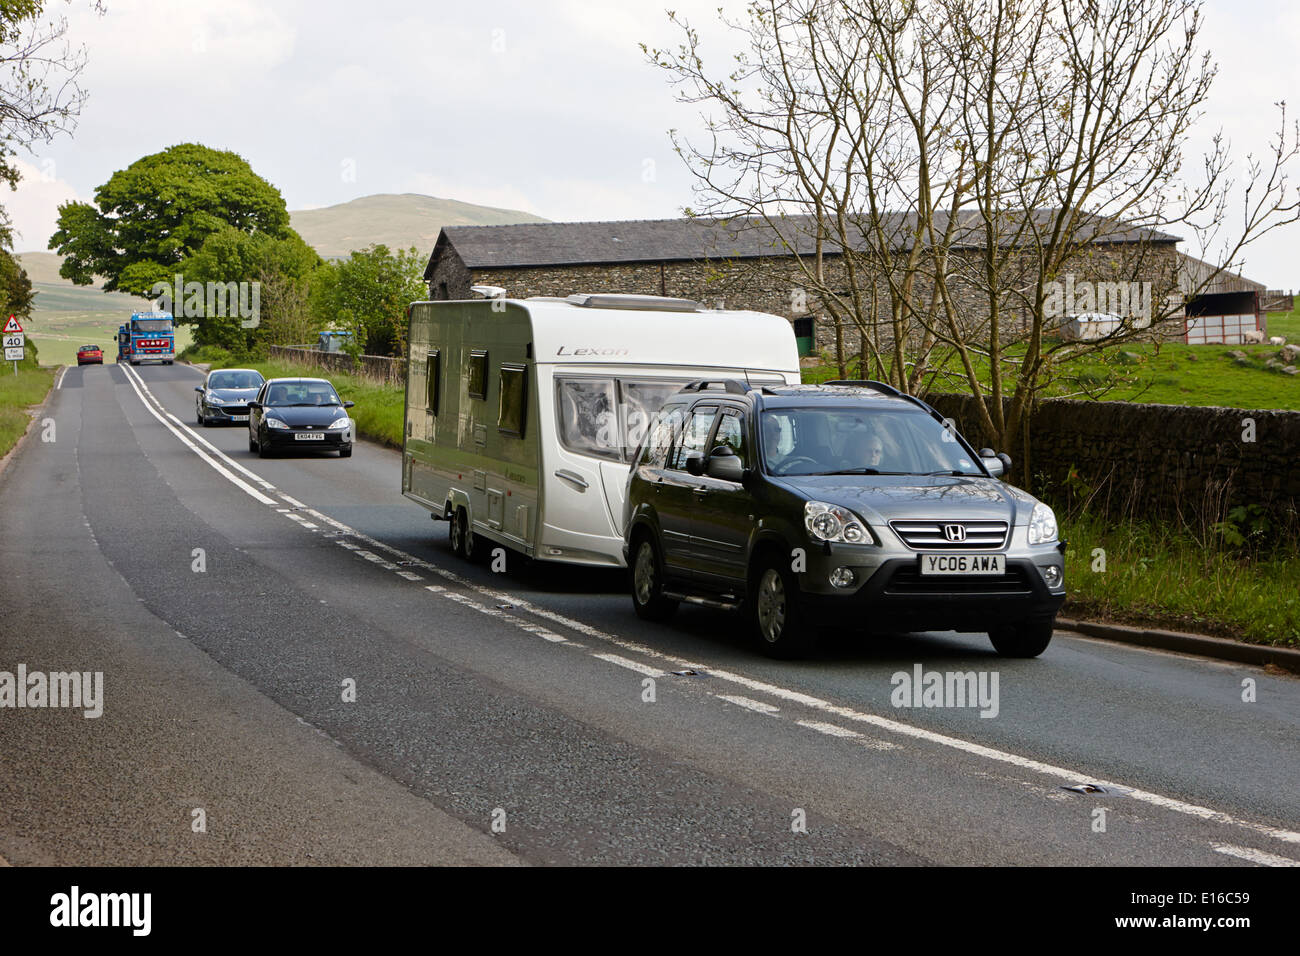 Les voitures d'attente derrière remorquage voiture caravane sur route A6 dans la région de Cumbria uk Banque D'Images